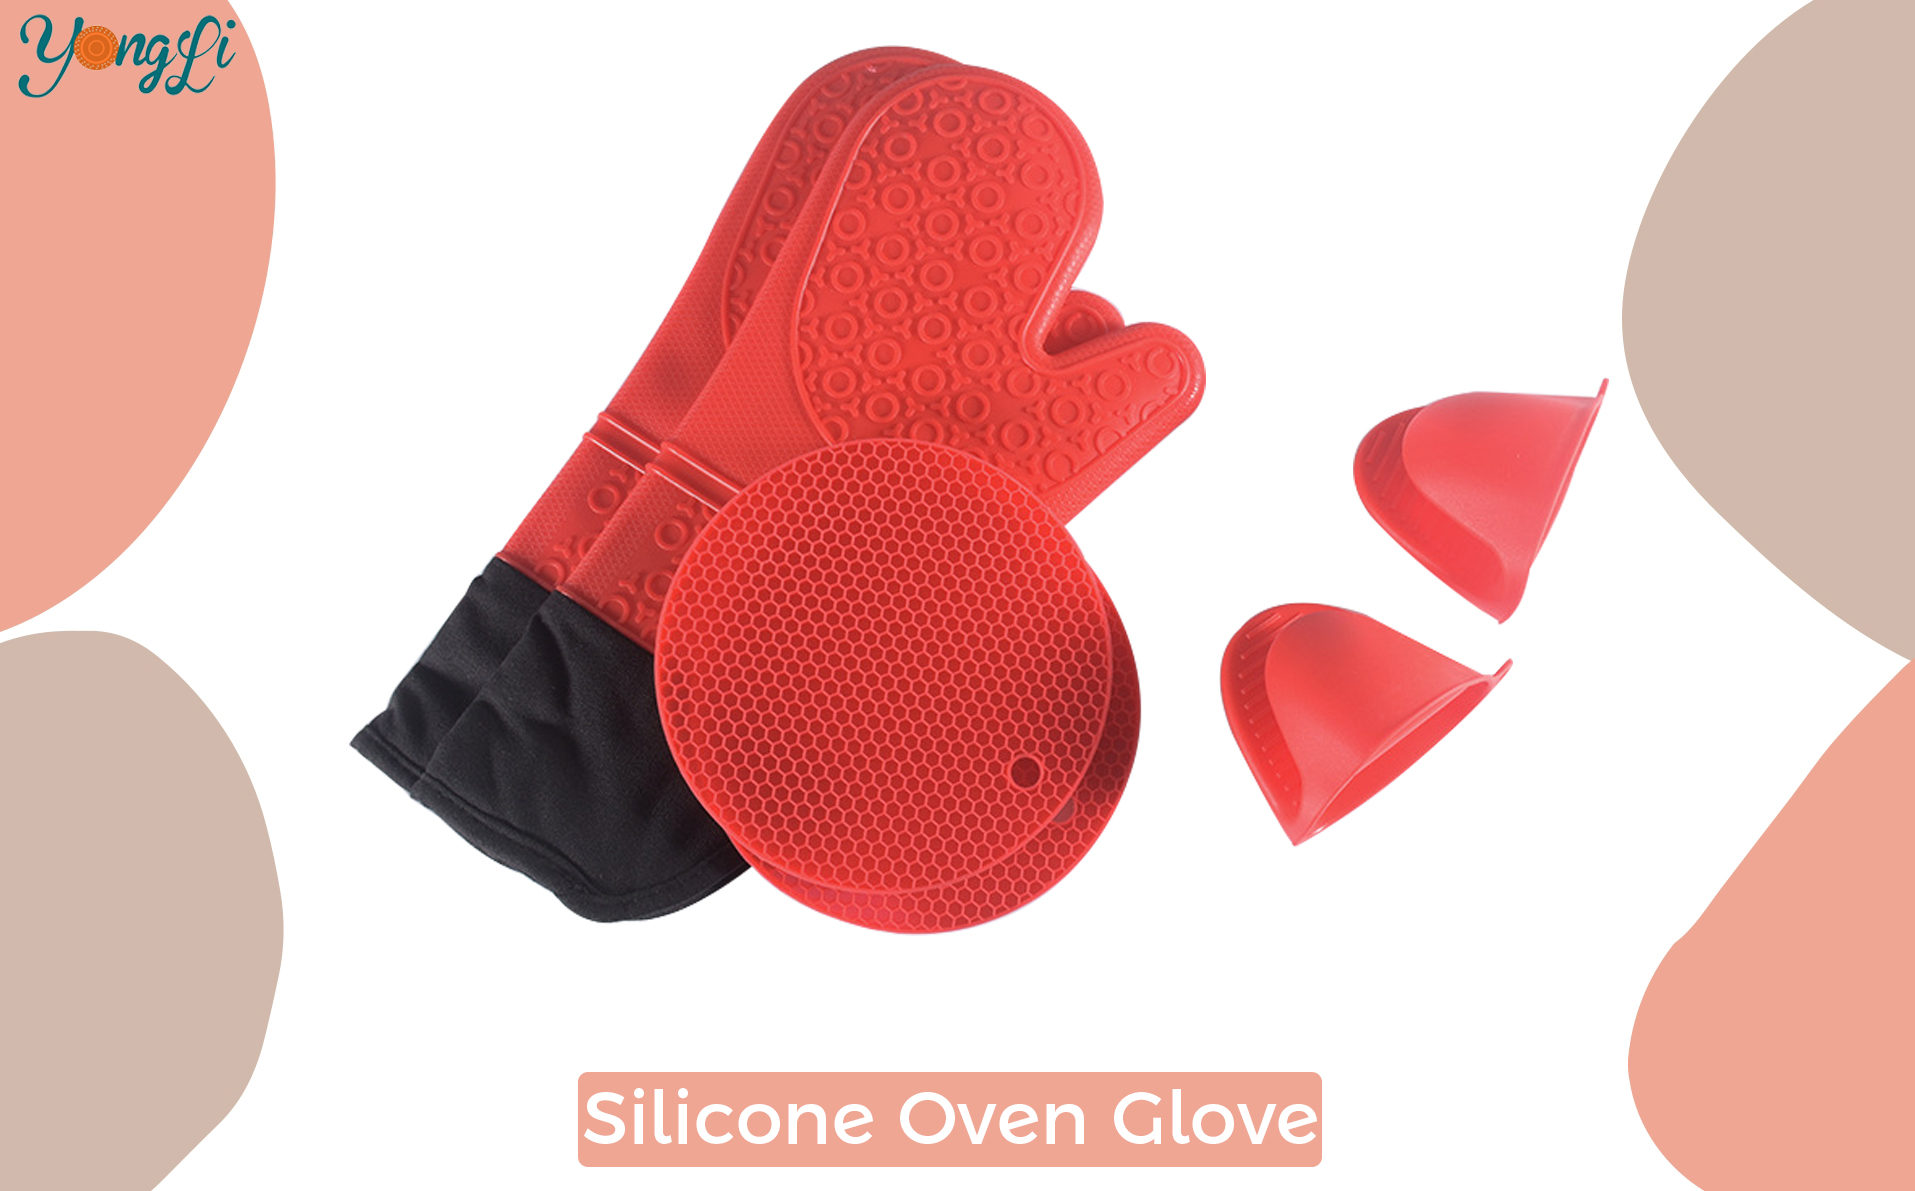 Výrobce pro silikonové rukavice |Yongli